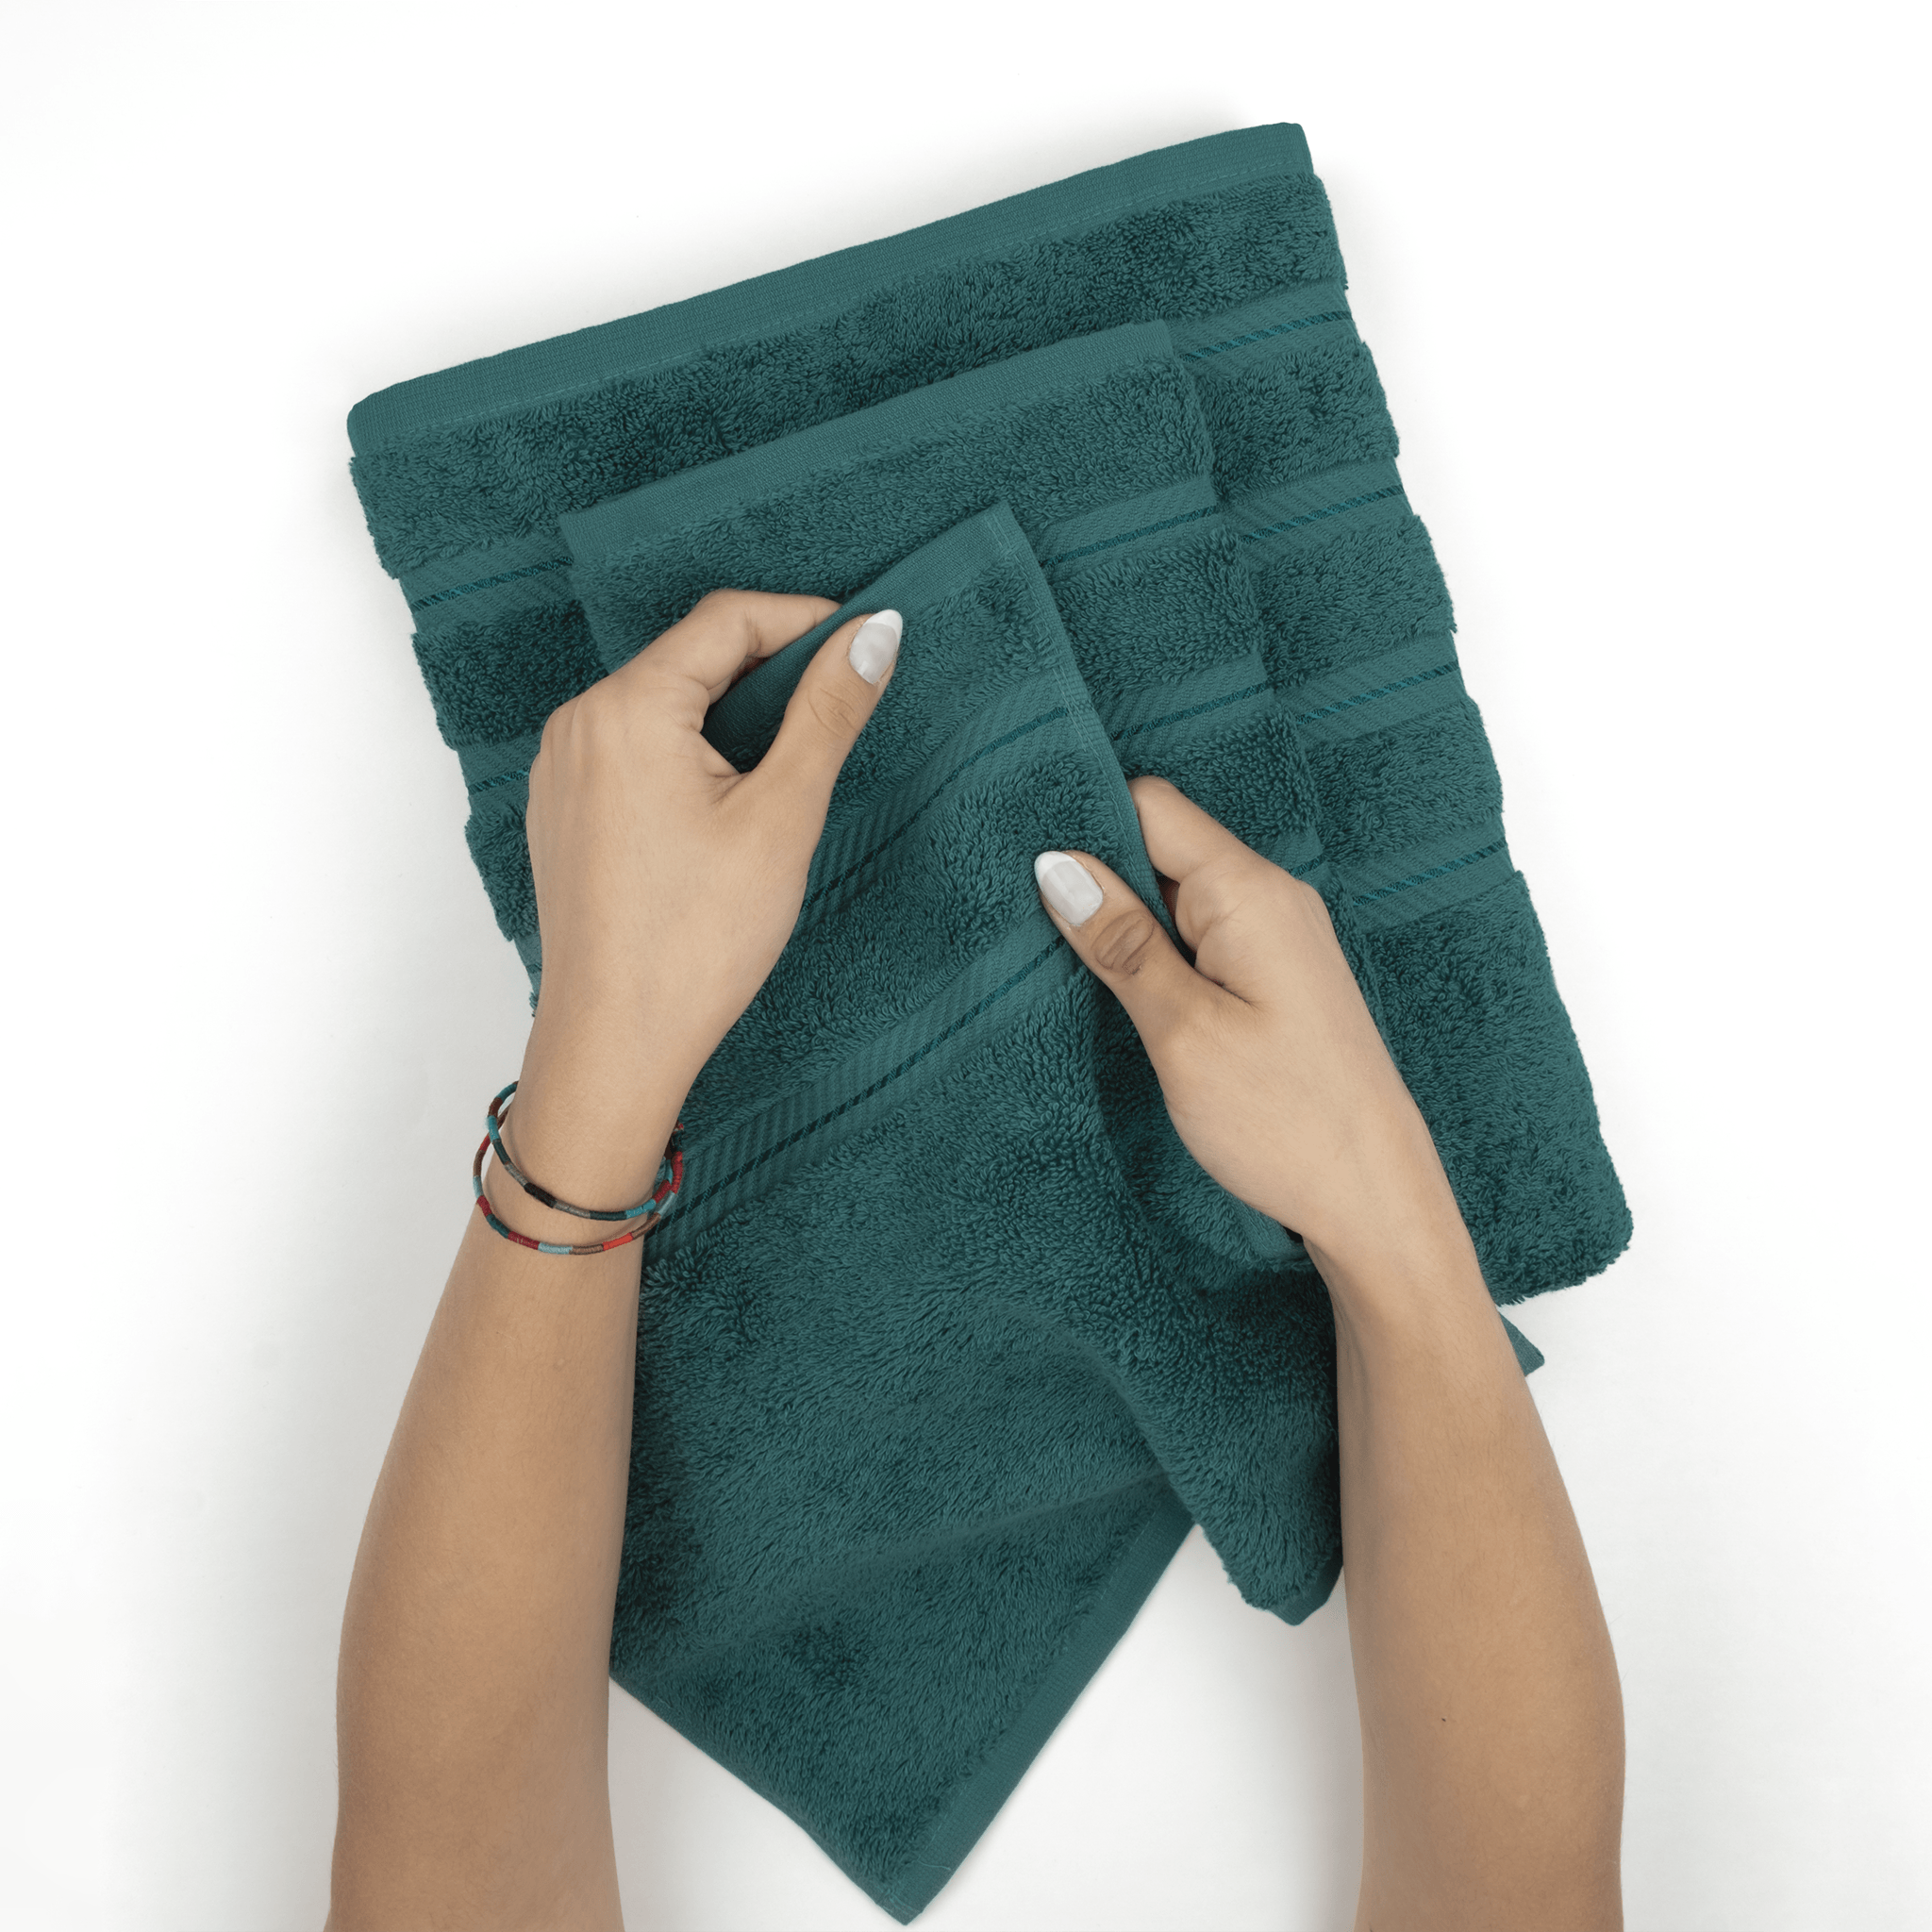 American Soft Linen - 6 Piece Turkish Cotton Bath Towel Set - Colonial-Blue - 5